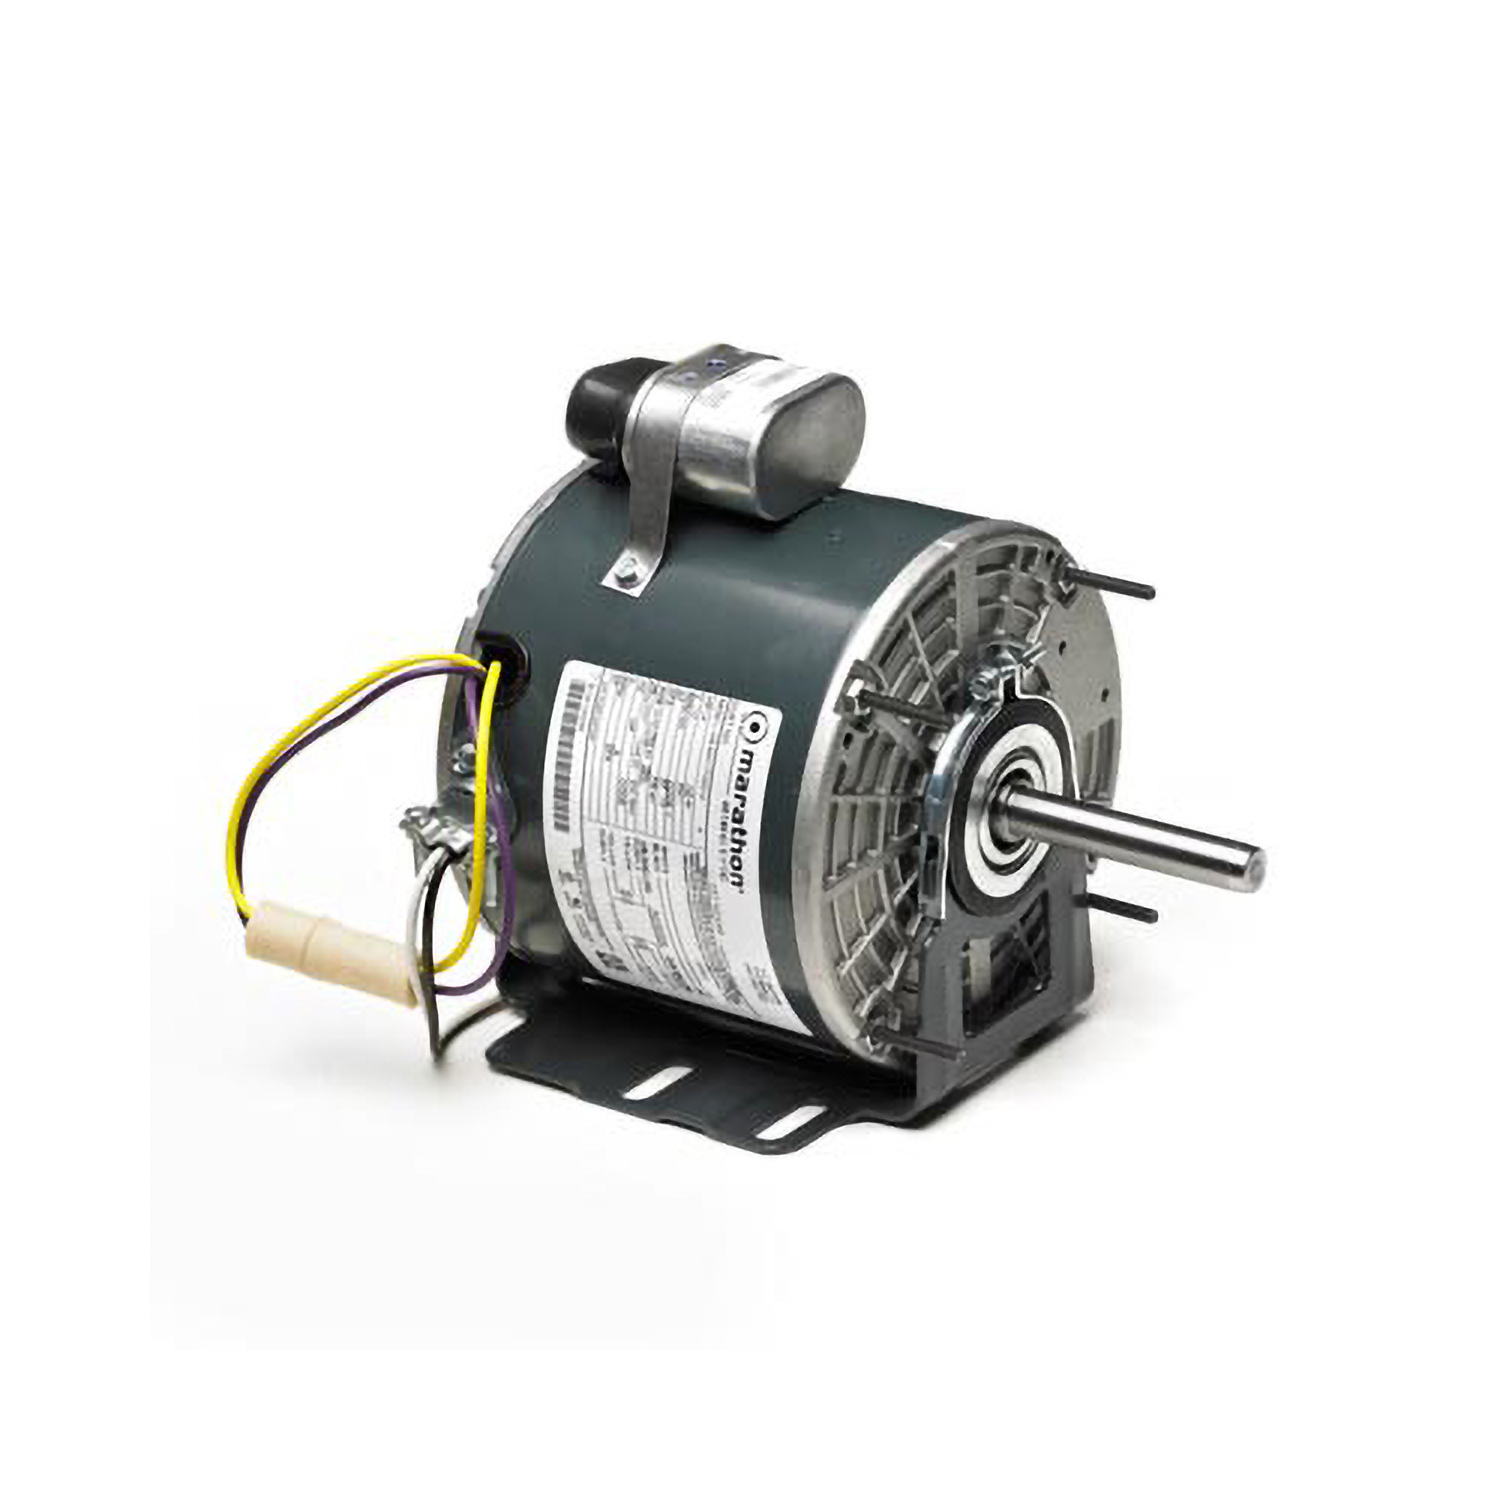 48Y Frame PSC Unit Heater Fan Motor, 1/6 HP, 1625 RPM, 115 Volts